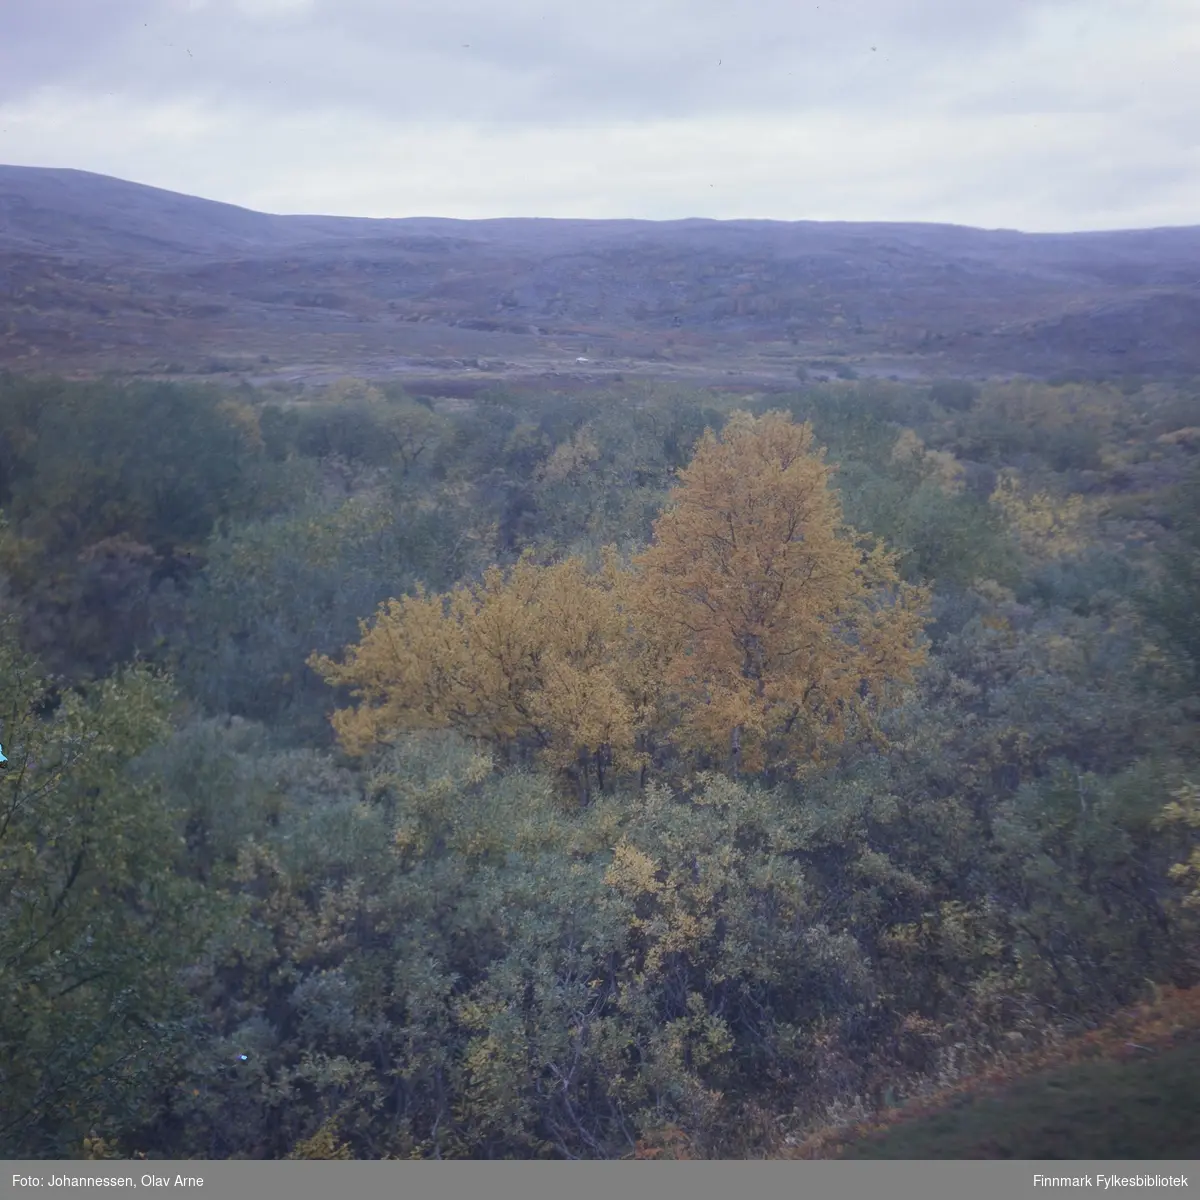 Foto av skog i høstfarger

Antagelig i Syltefjorddalen (Finnmark) 

Foto trolig tatt på 1960/70-tallet